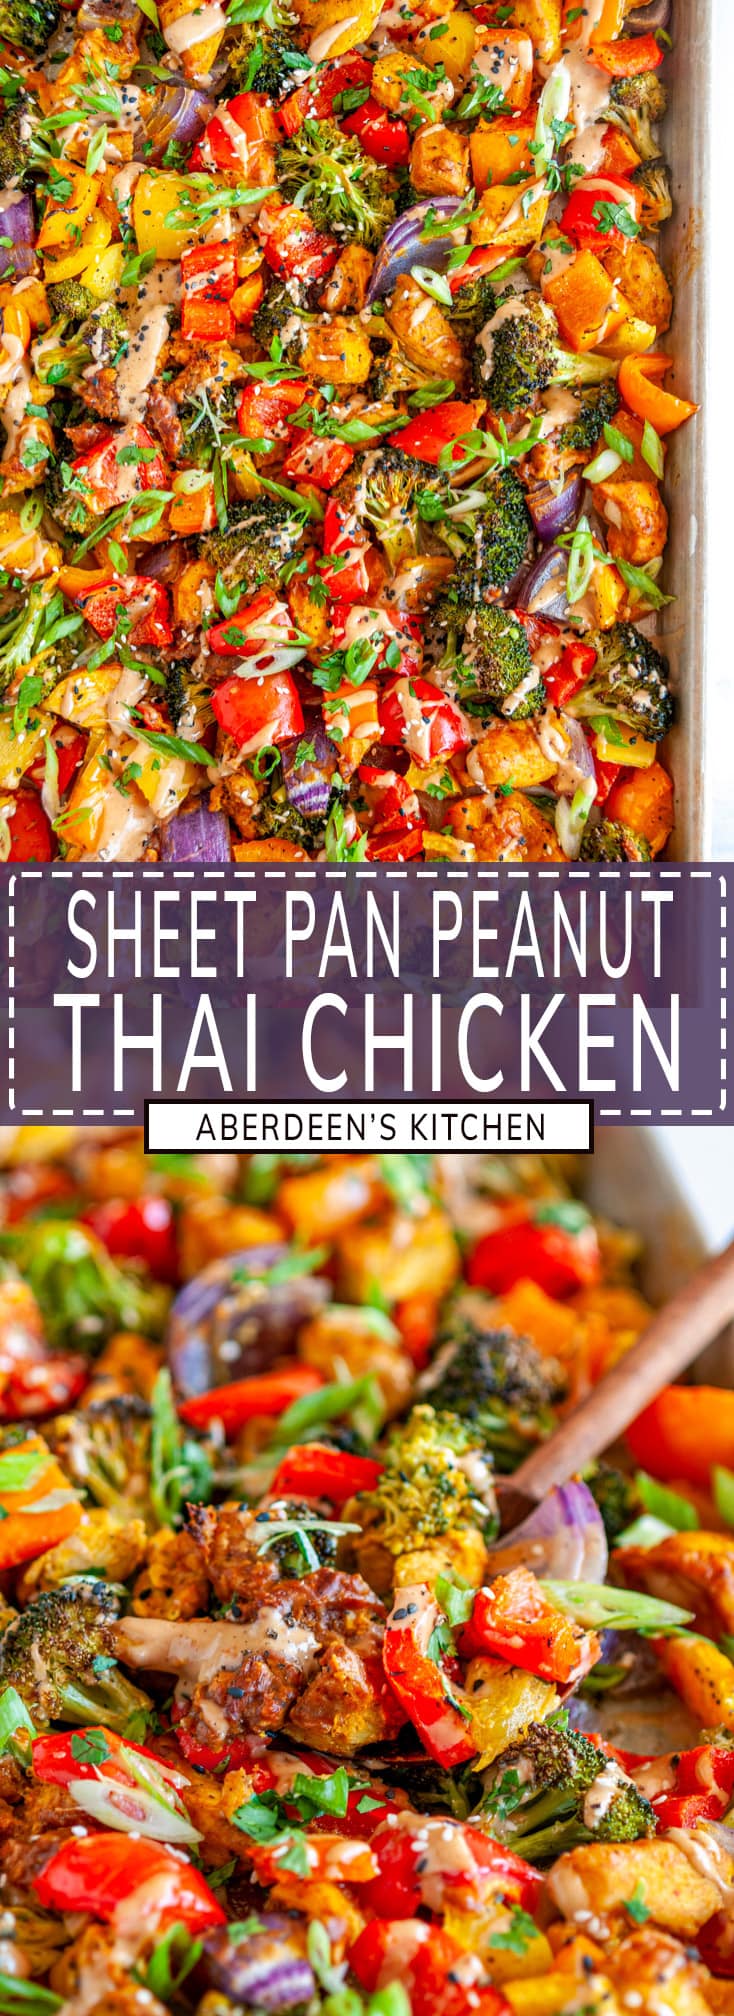 Sheet Pan Thai Chicken Dinner - Aberdeen's Kitchen